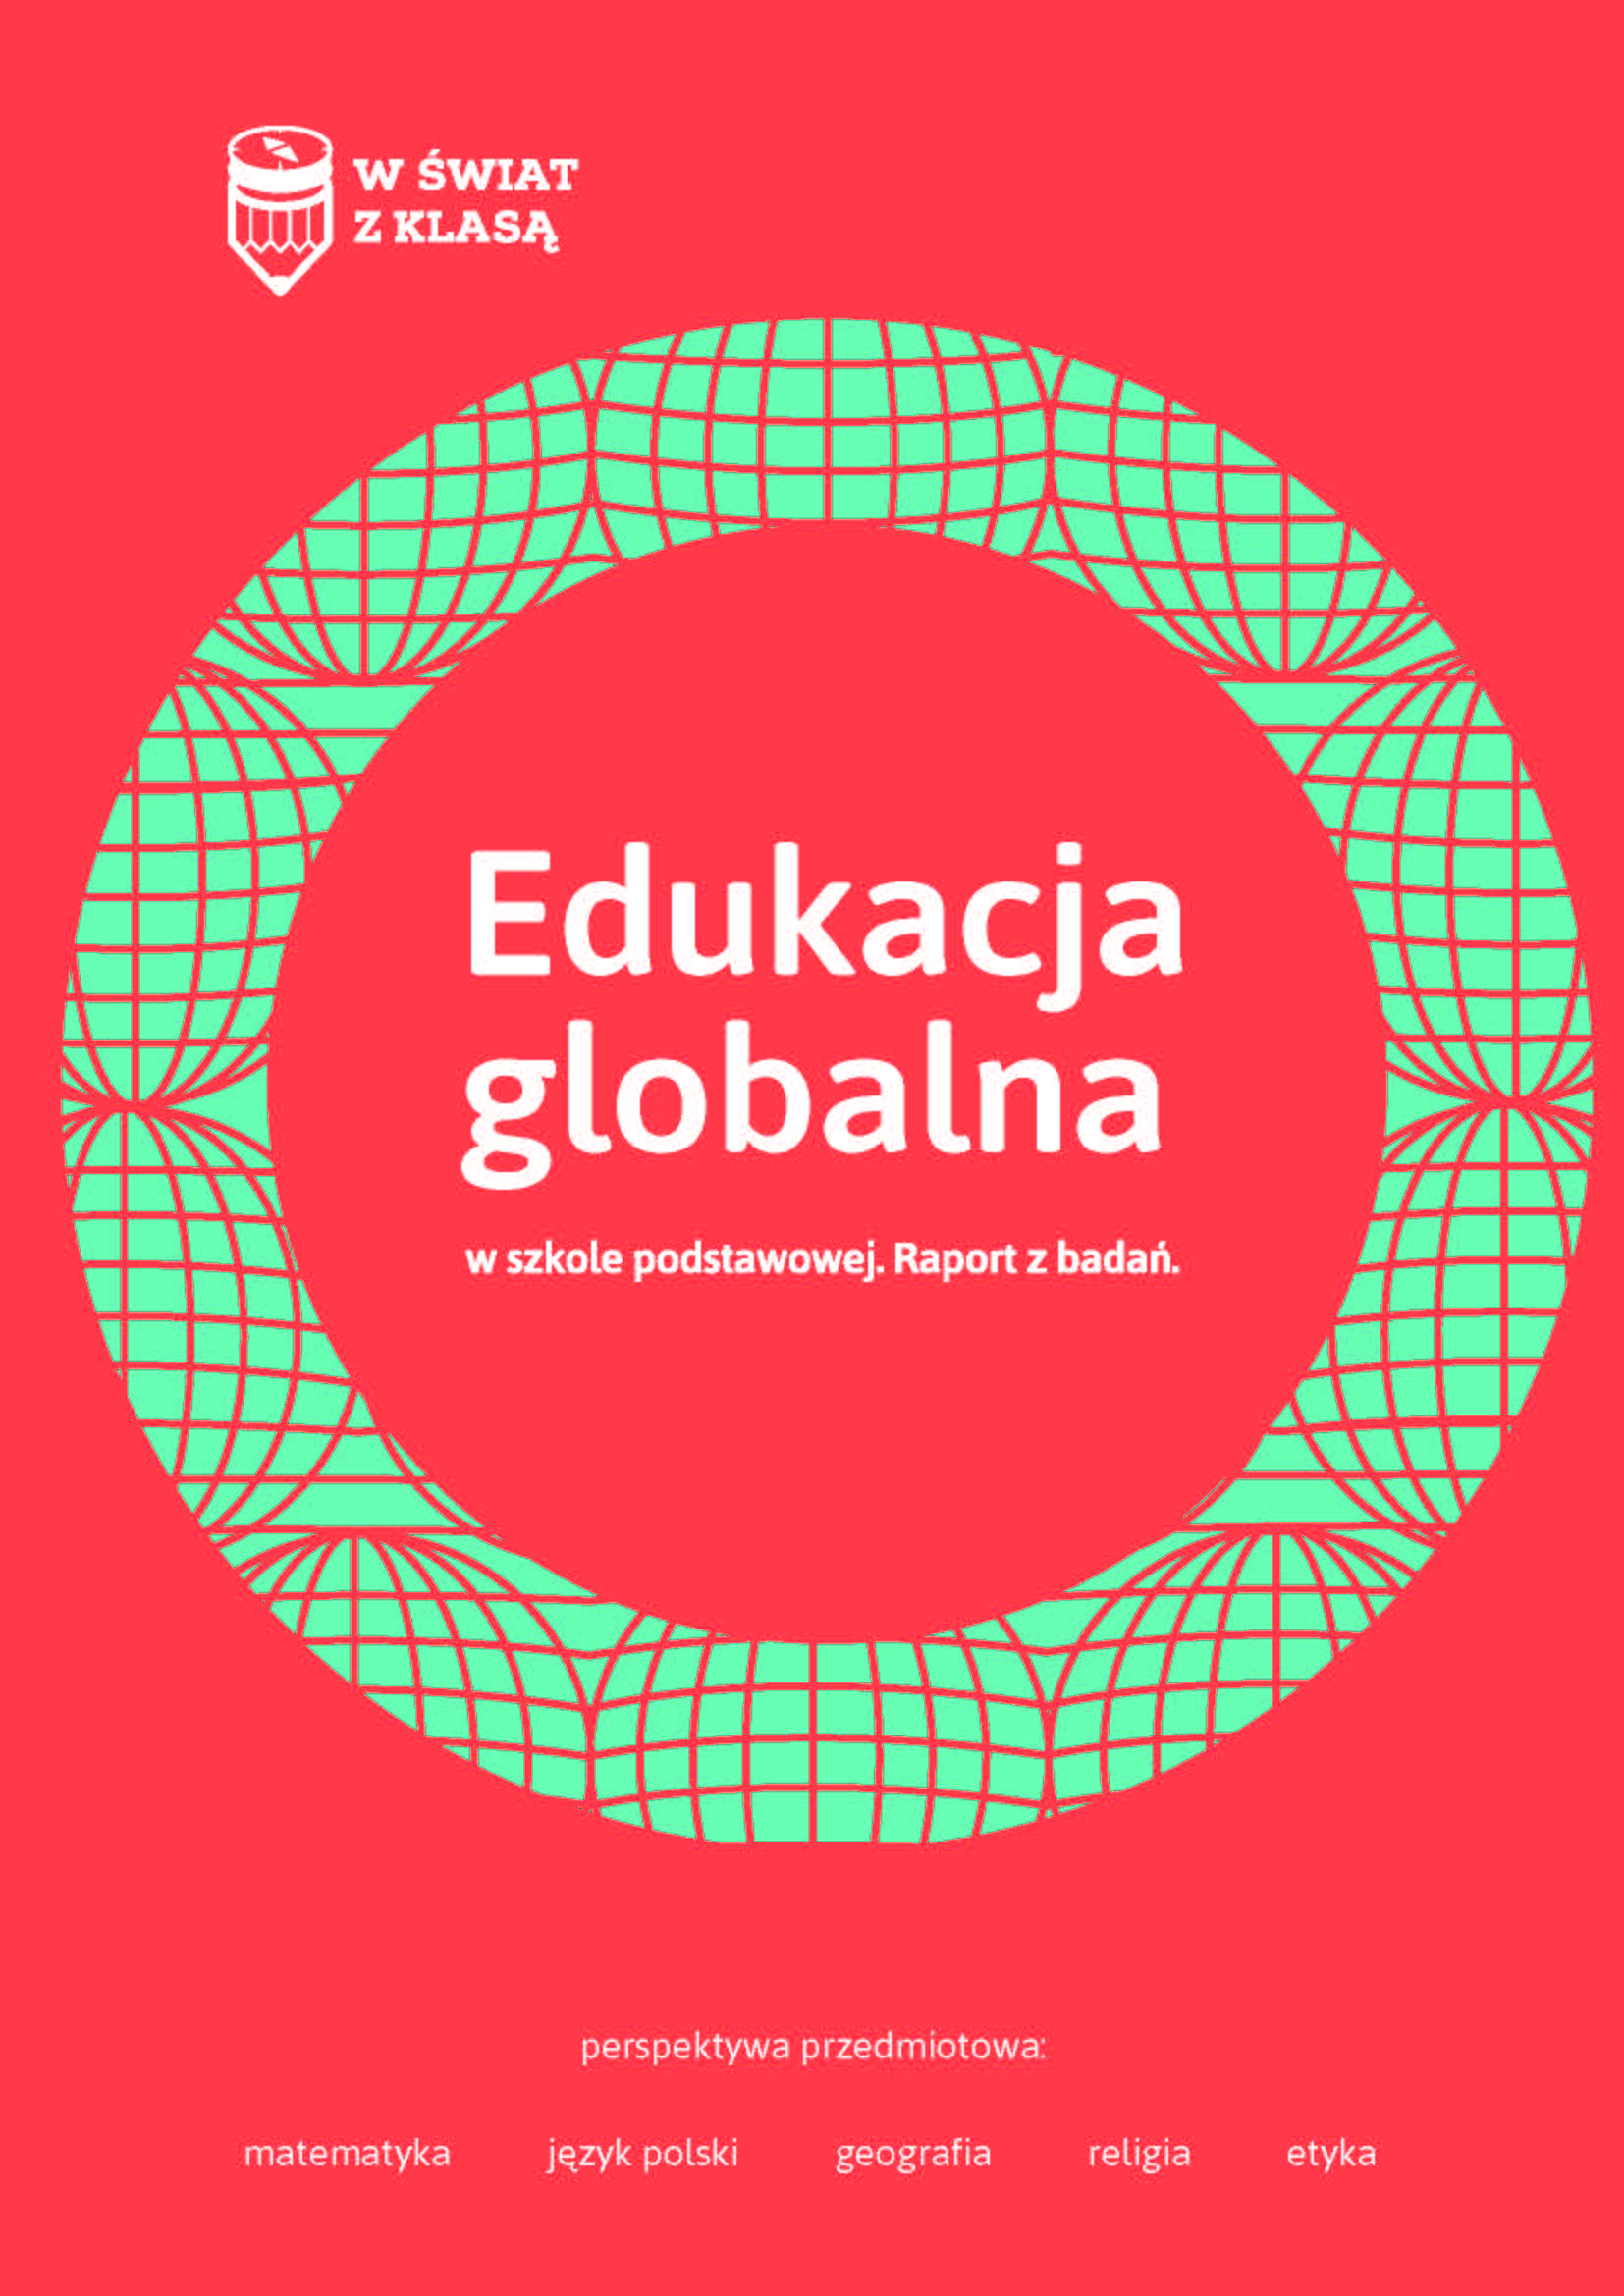 Edukacja globalna w szkole podstawowej - raport z badań